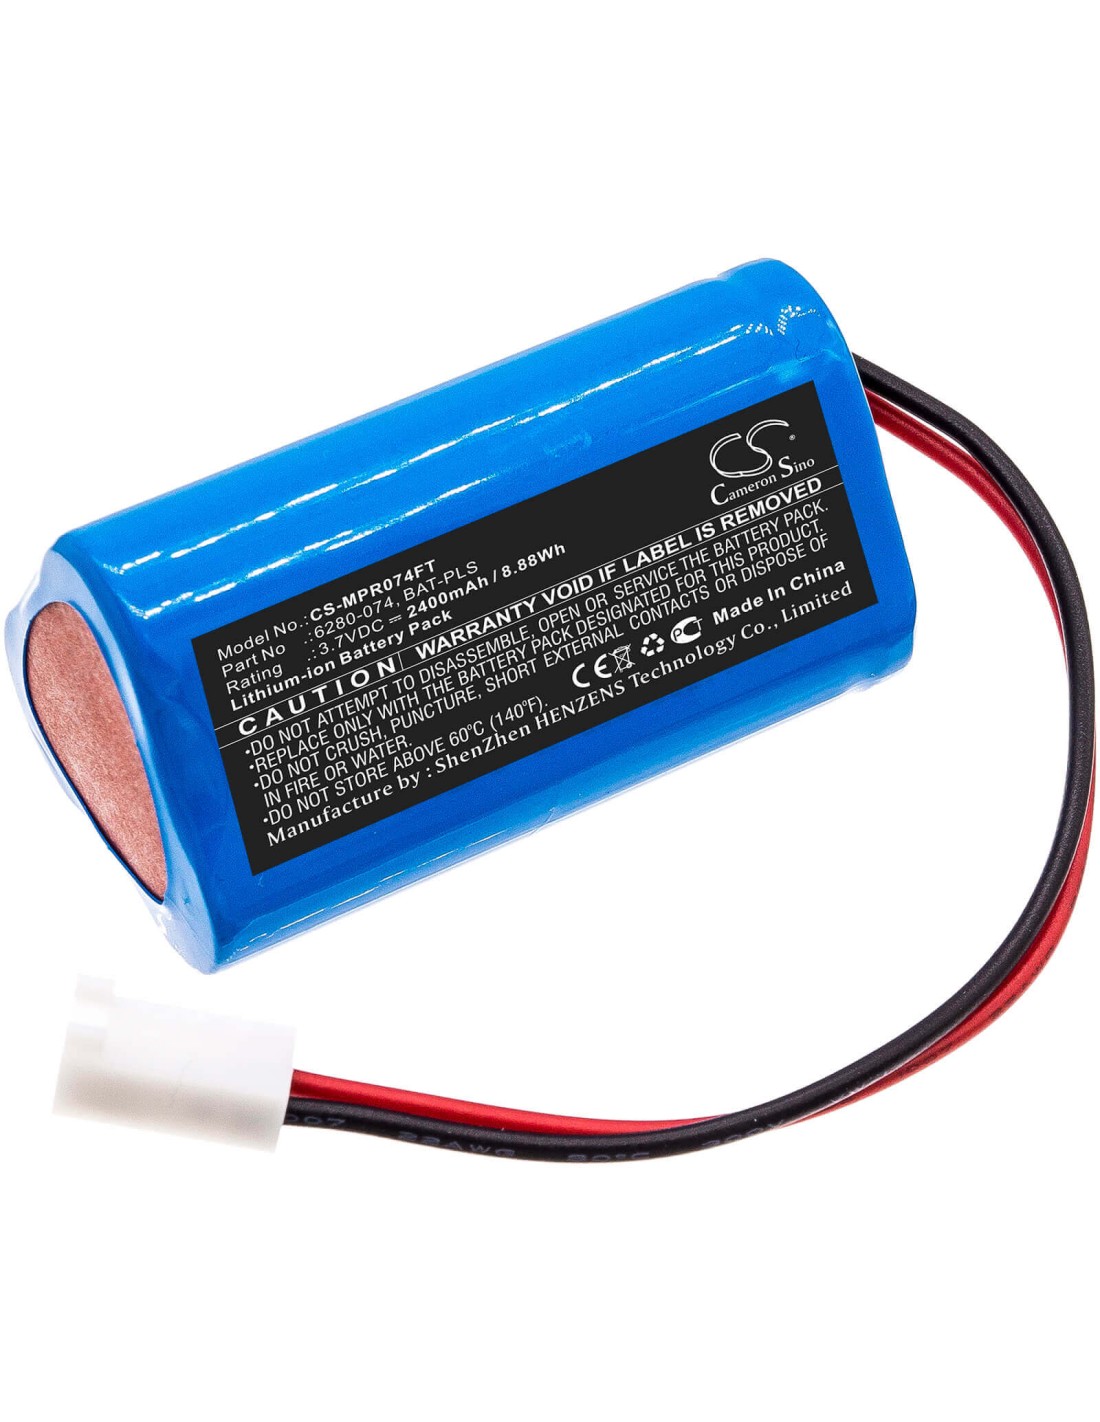 Battery for Monarch, Pocket, Led, Stroboscope 3.7V, 2400mAh - 8.88Wh